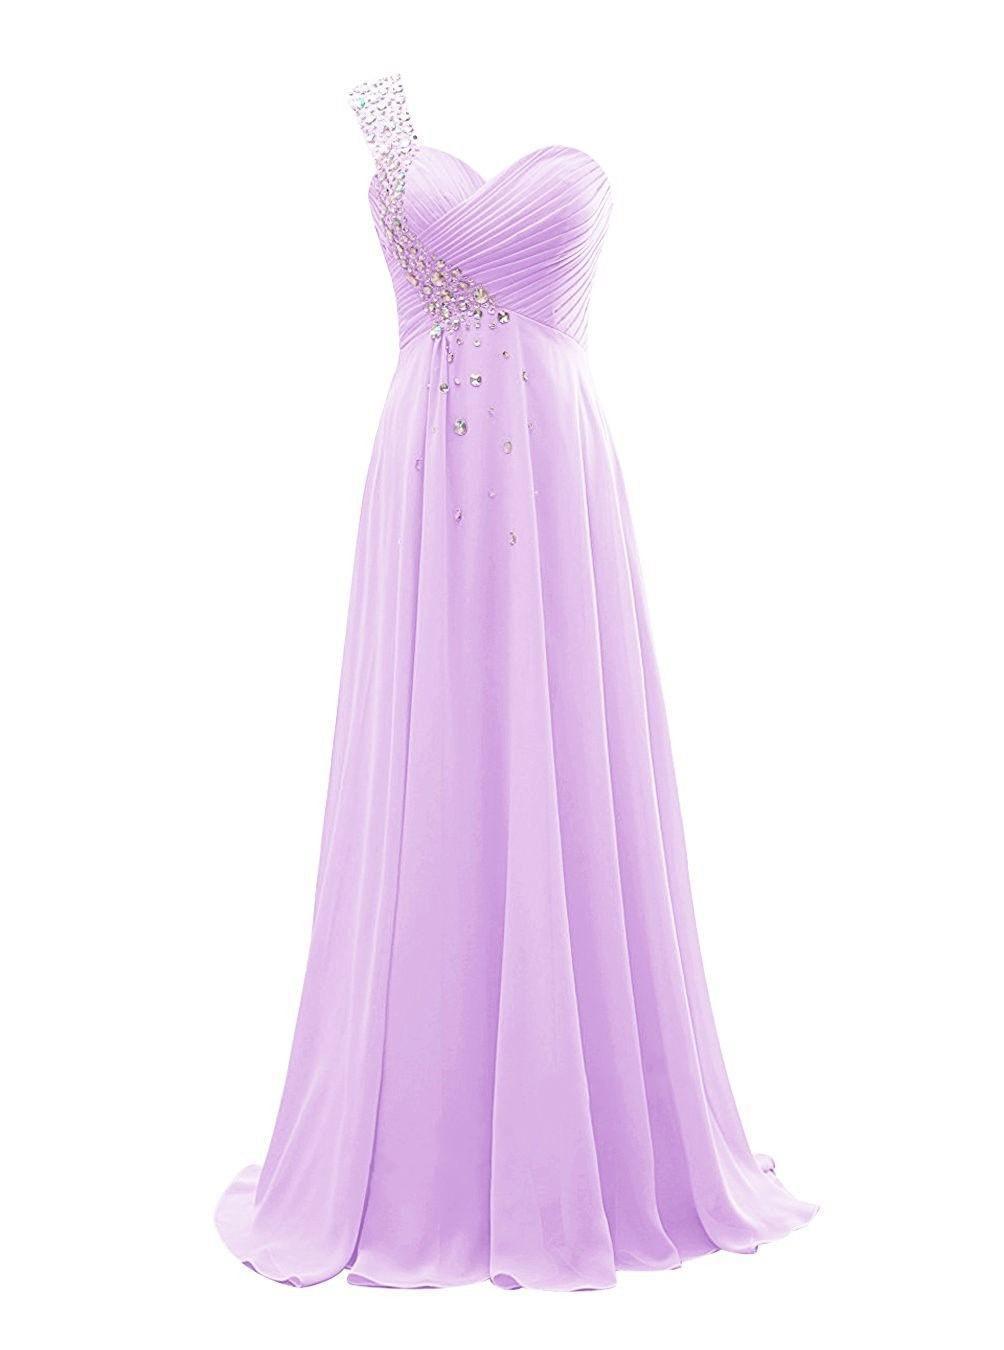 Lilac One Shoulder Chiffon Long Evening Dress